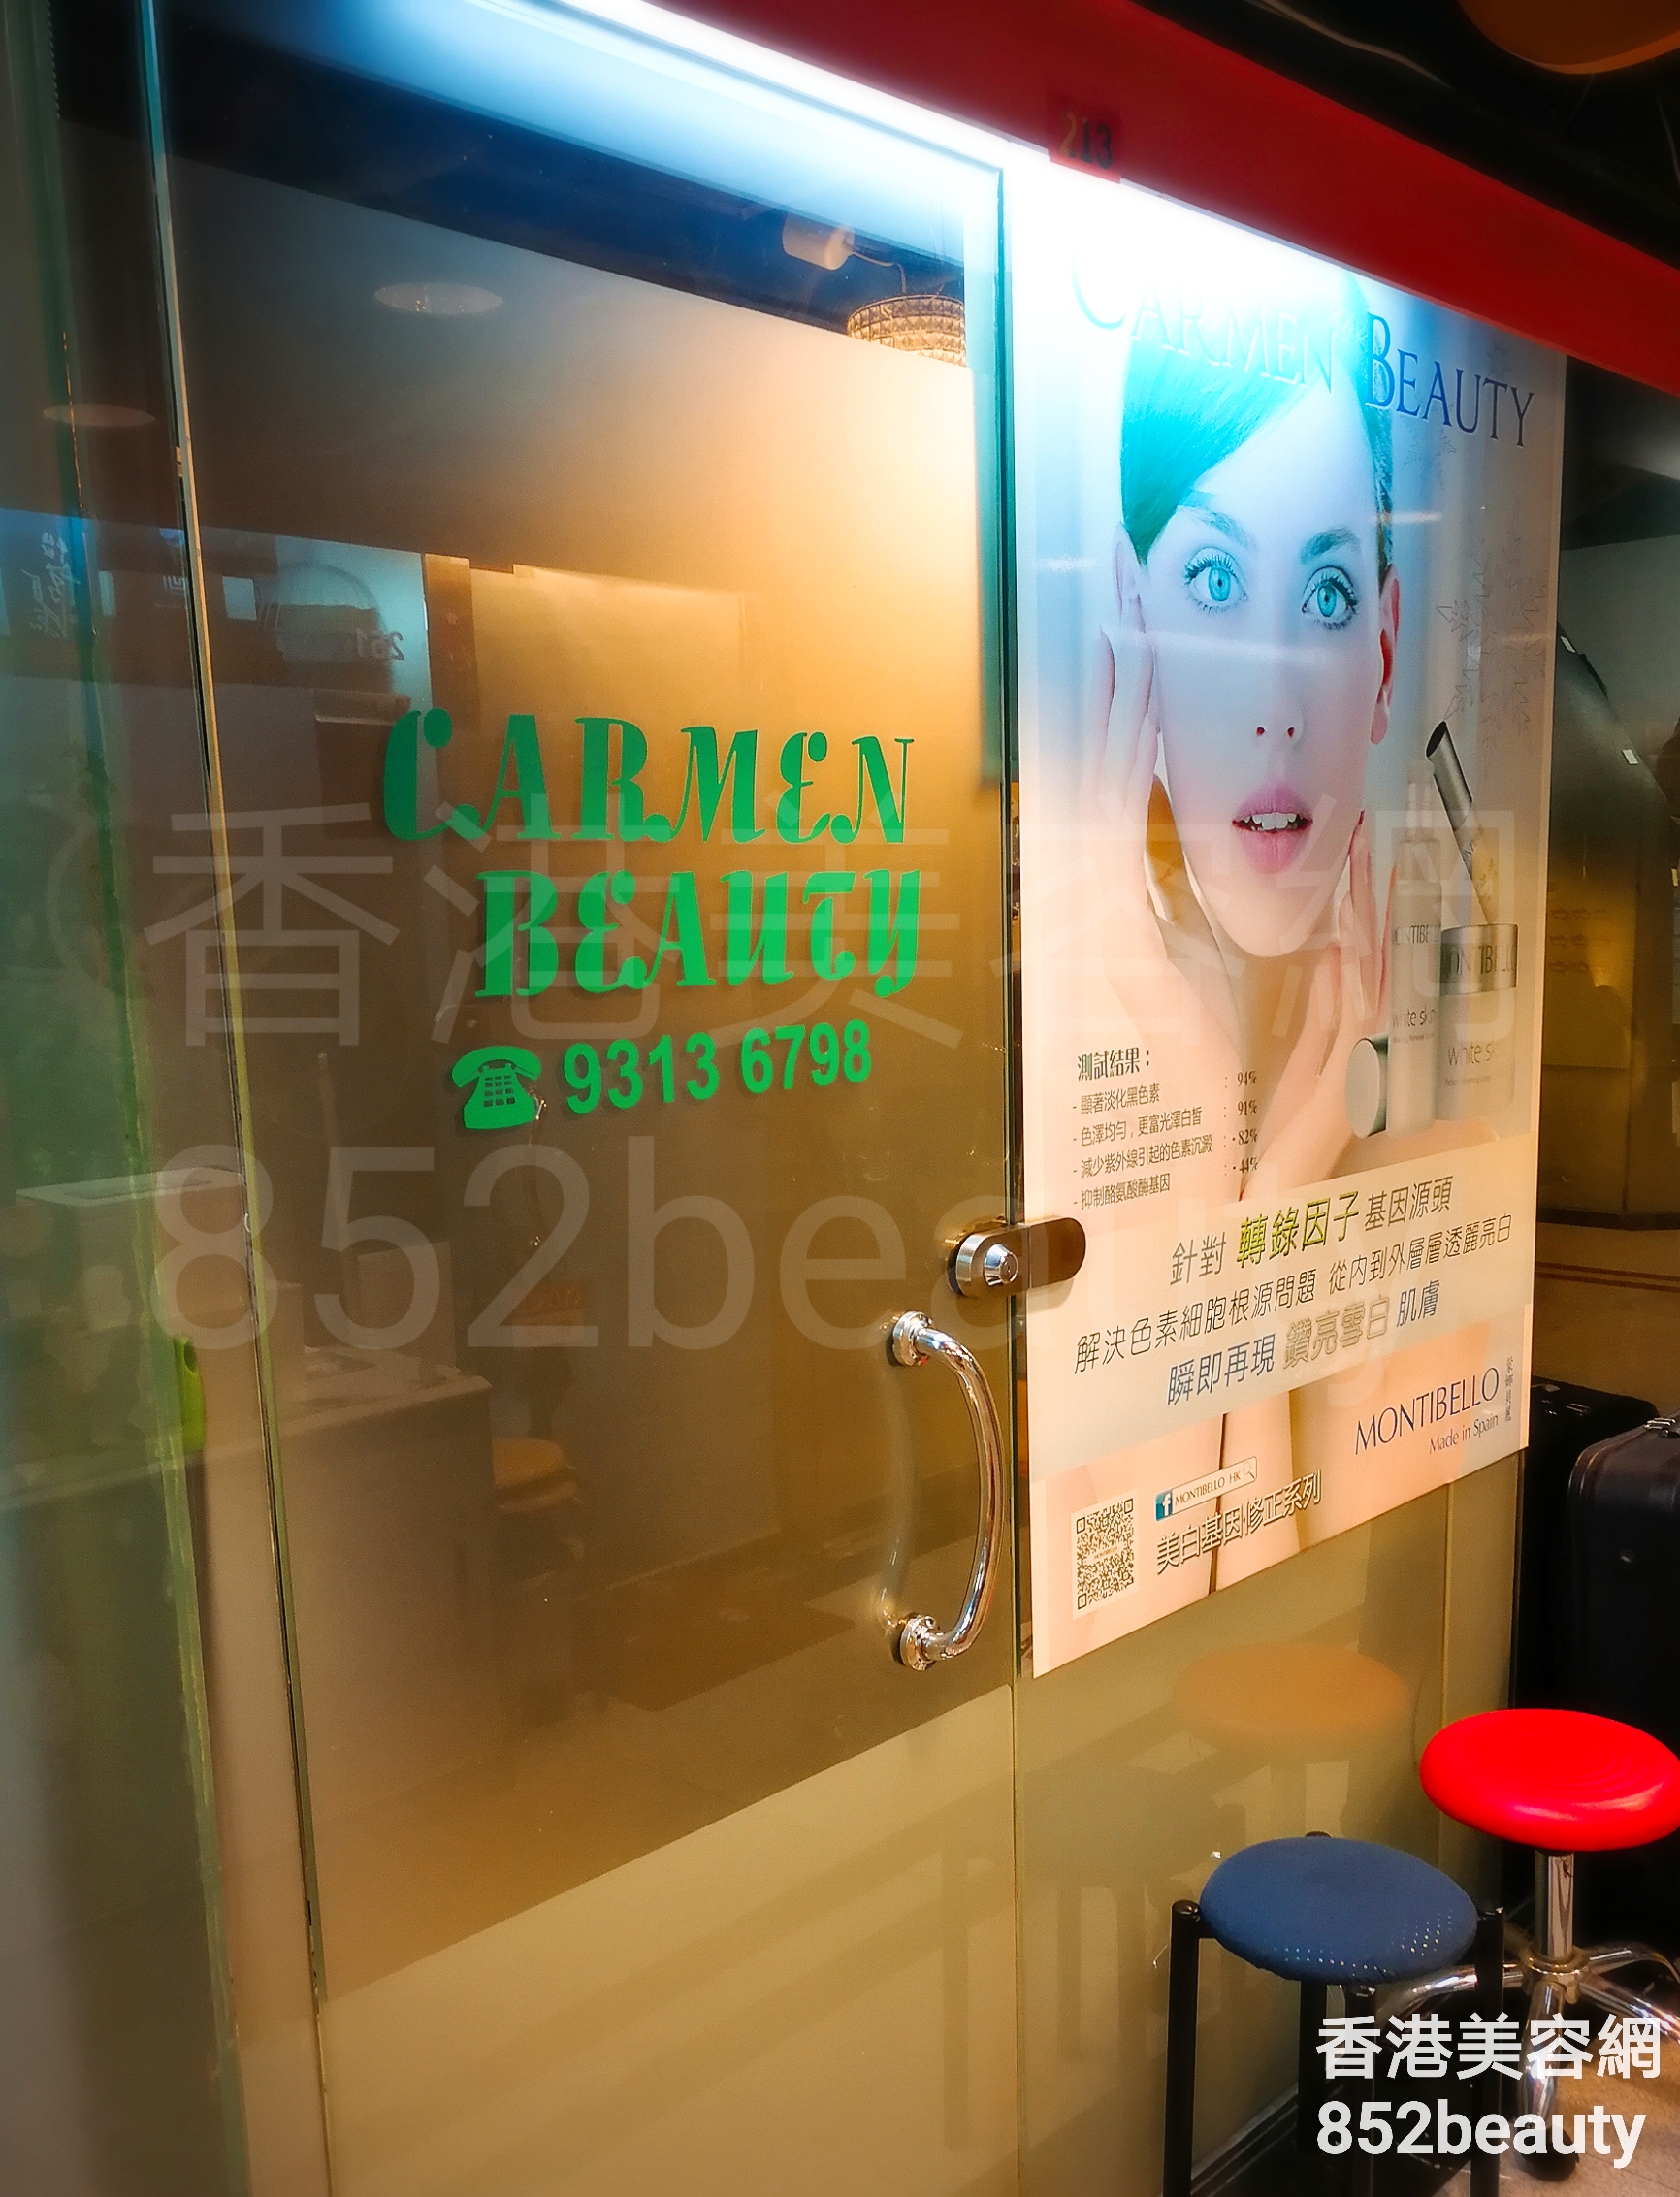 香港美容網 Hong Kong Beauty Salon 美容院 / 美容師: CARMEN BEAUTY